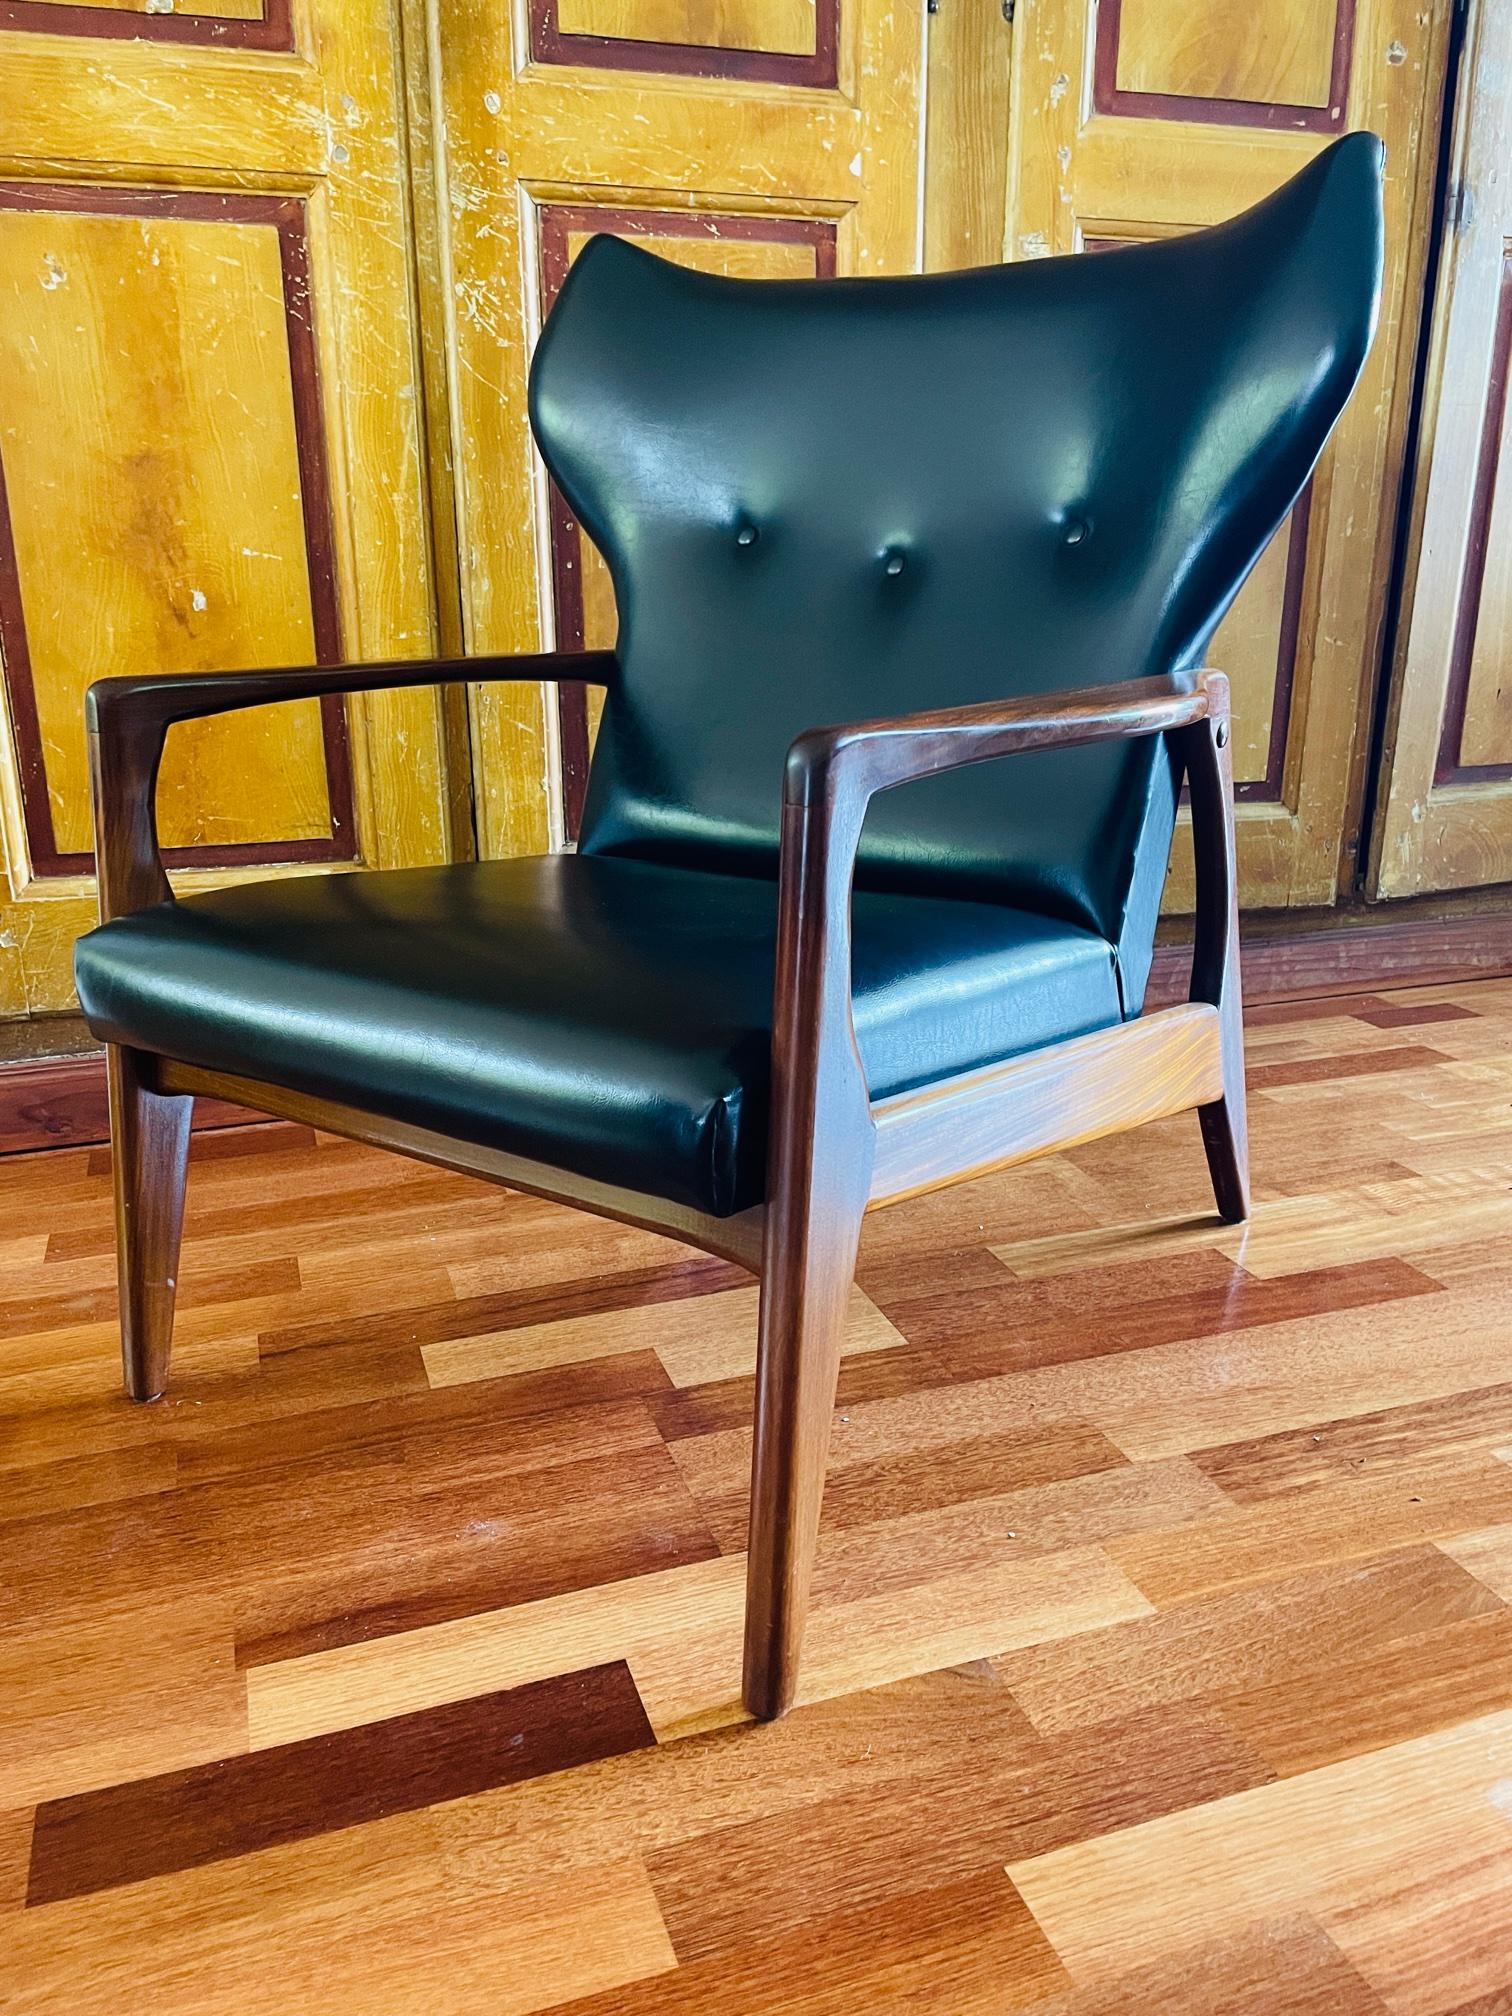 Quelle chaise ! C'est le genre de chaise que vous ne verrez plus jamais. Fabriqué dans les années 60 mais en parfait état ! Il est resté dans la petite chambre d'un couple âgé pendant des décennies. Ils ne se sont jamais assis dedans. Il vient